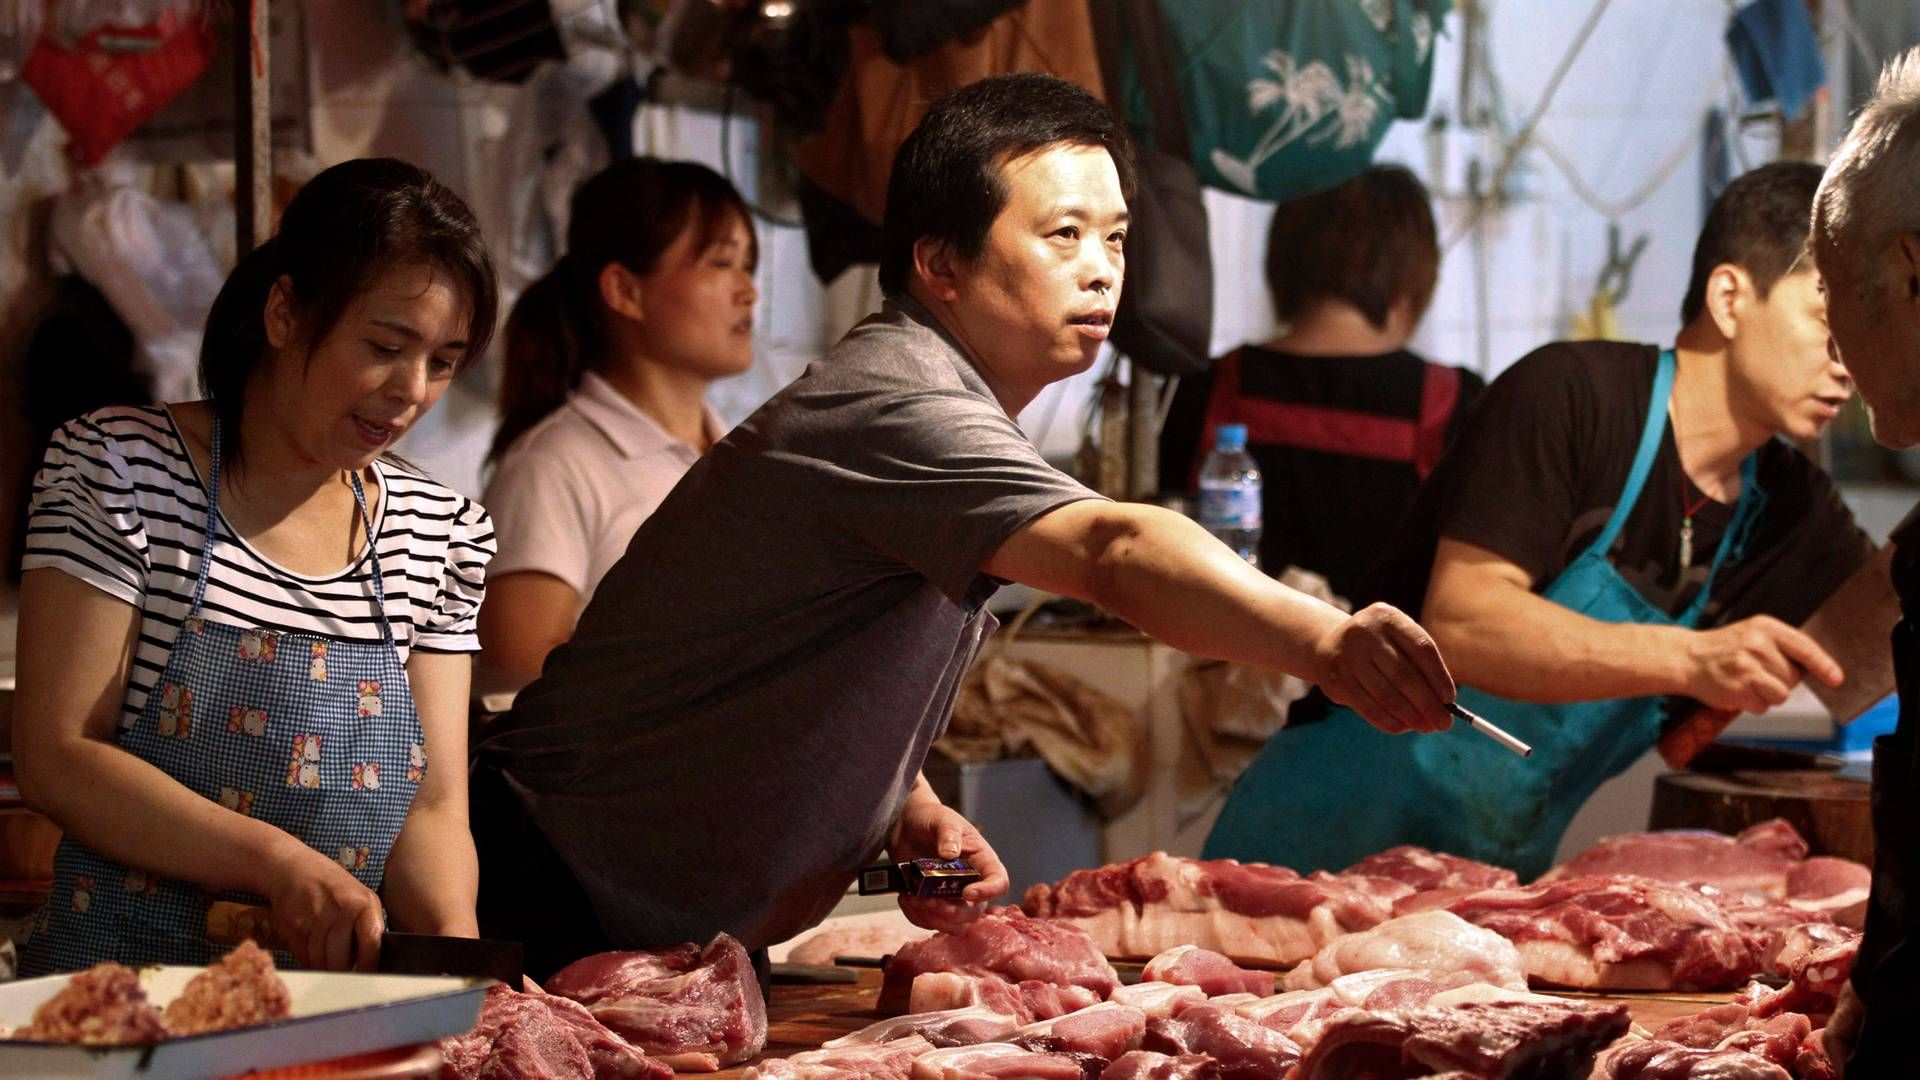 Efterspørgslen på kød i Myanmar er stigende. | Foto: AP/POLFOTO/arkiv